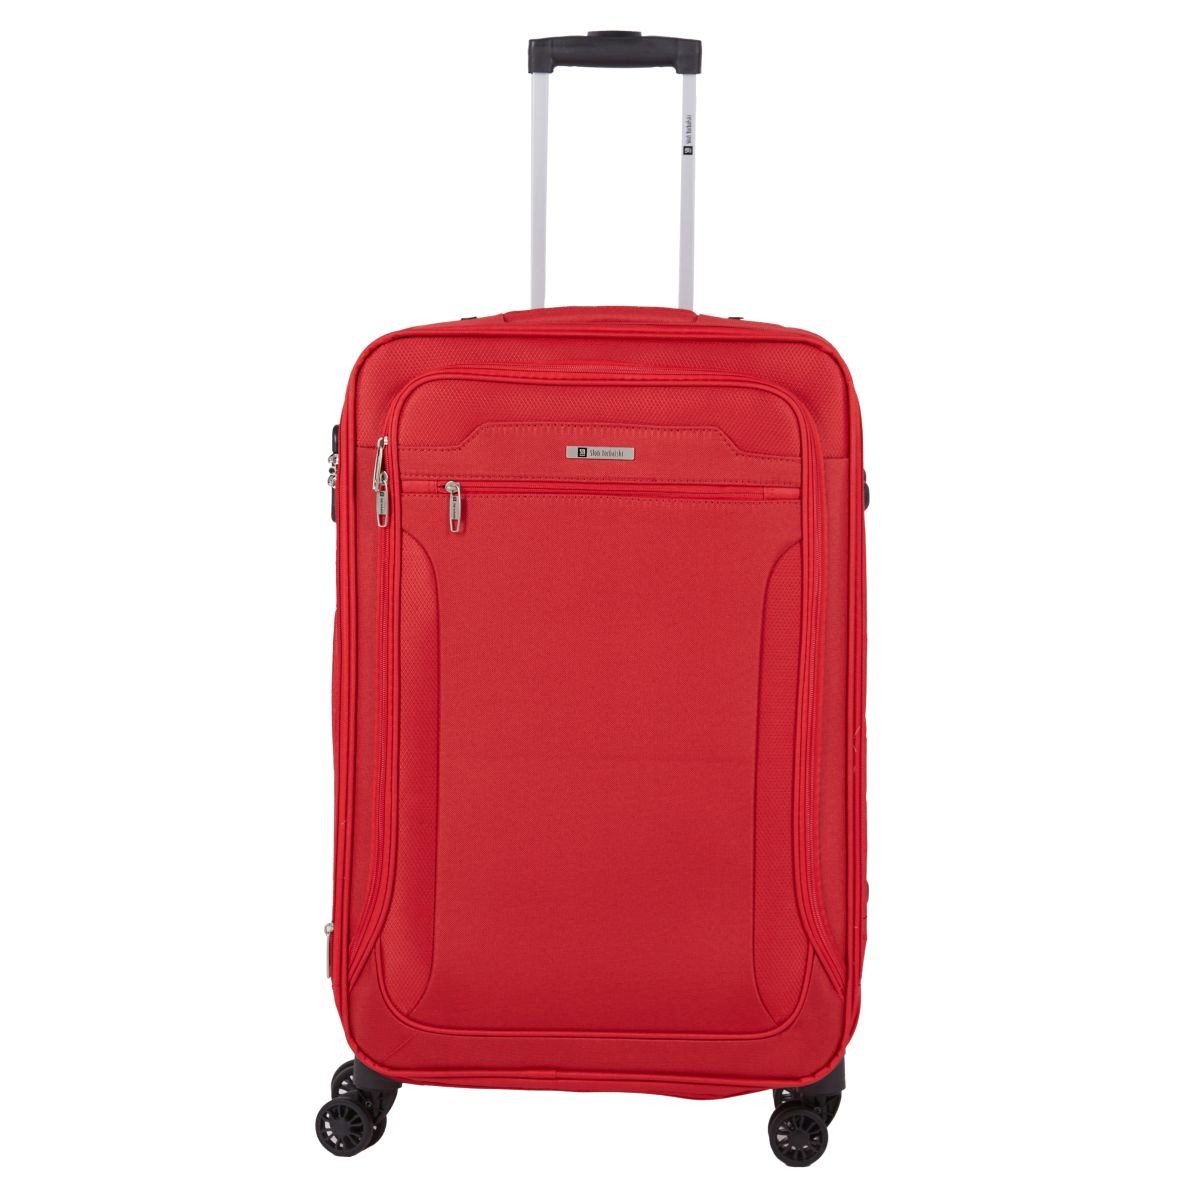 czerwona walizka średnia materiałowa miękka 70 cm z poszerzeniem